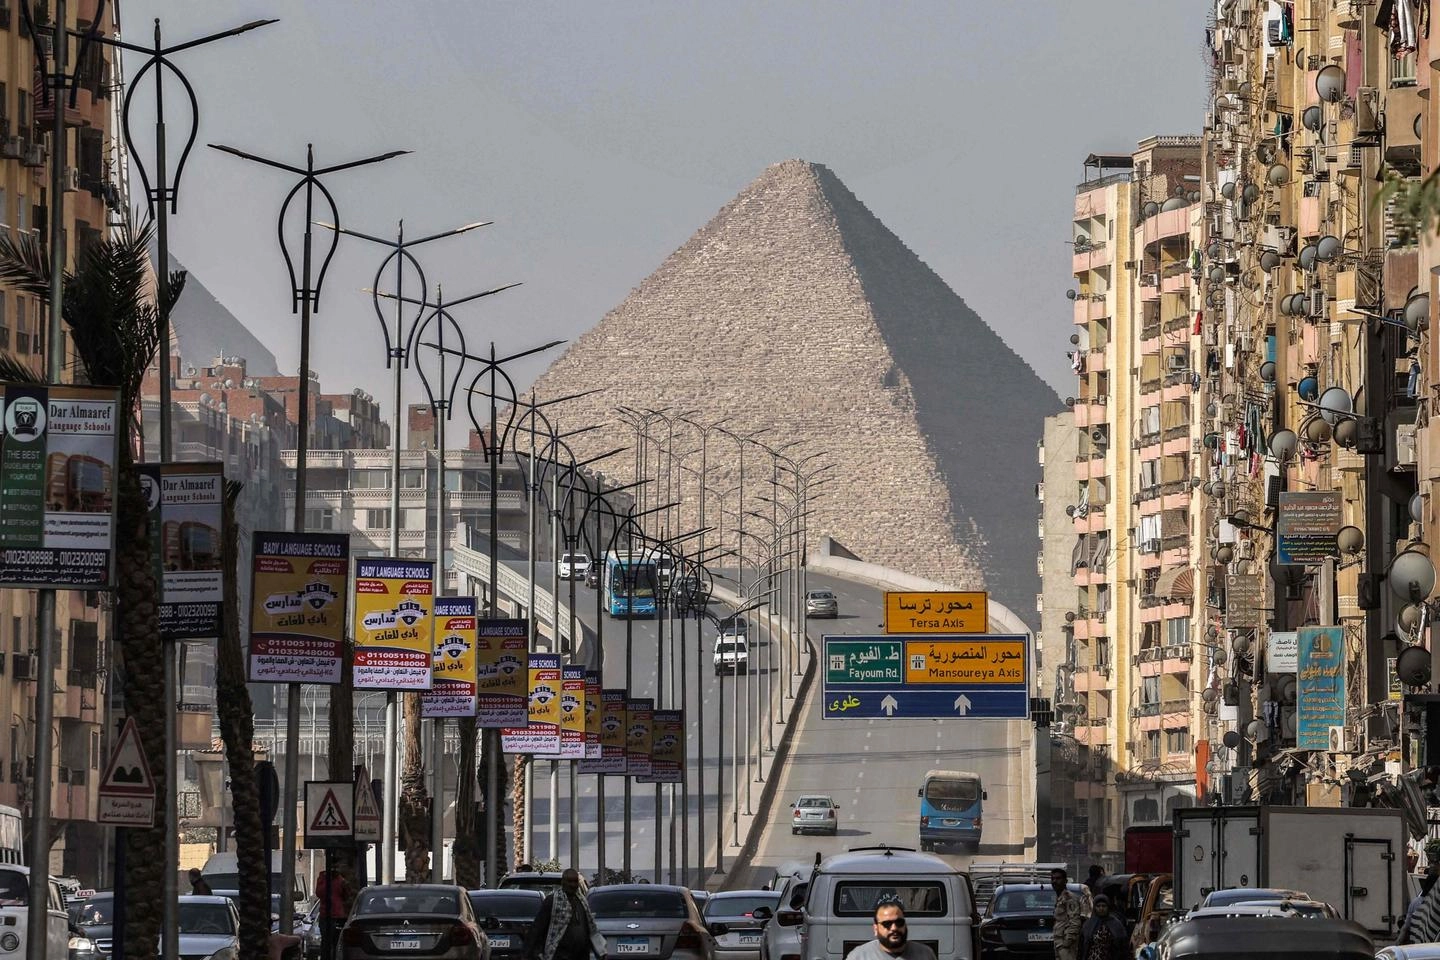 La grande piramide di Cheope in Egitto (Ansa)